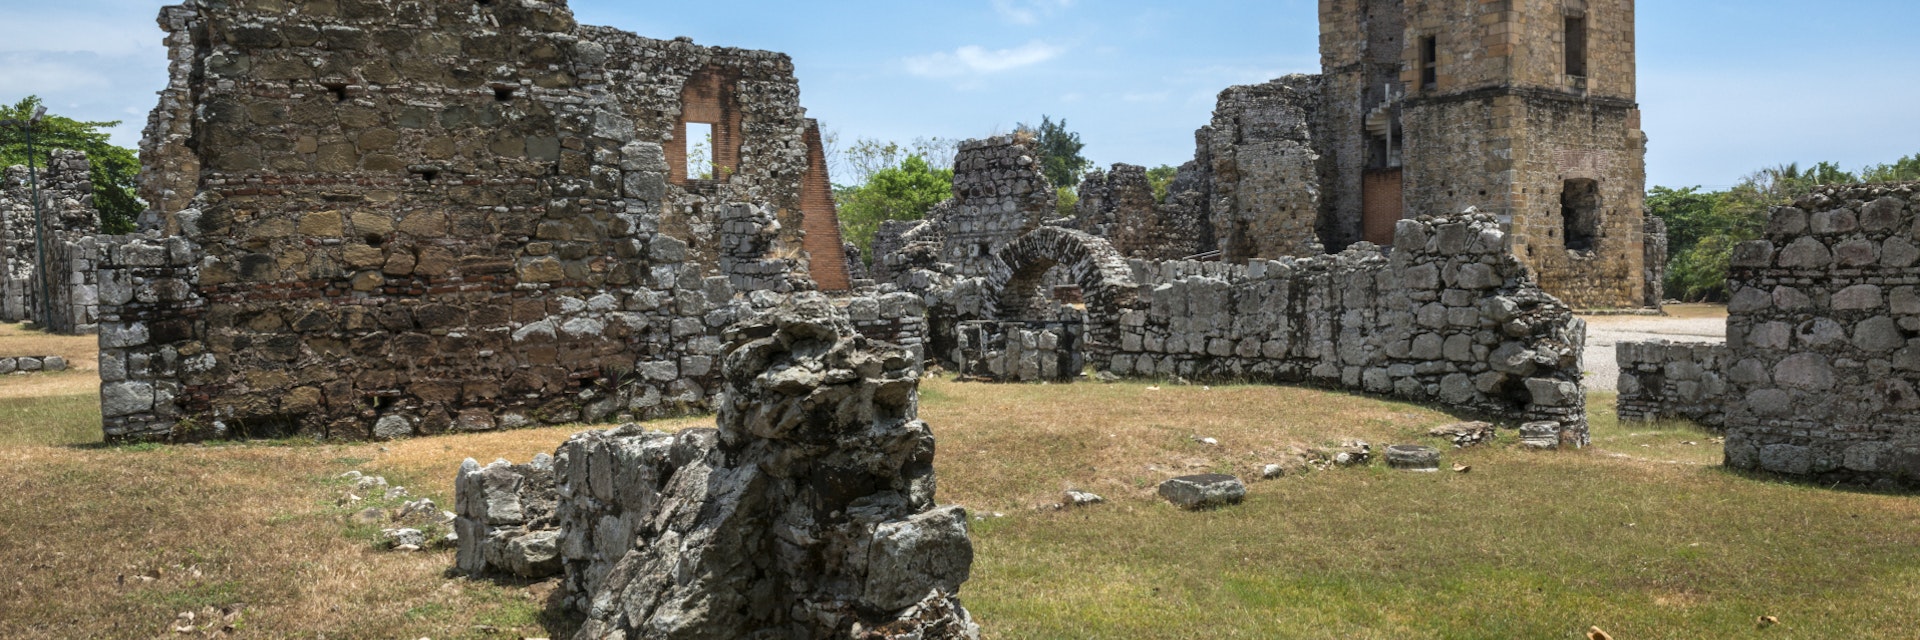 Panama Viejo Ruins, Panama City